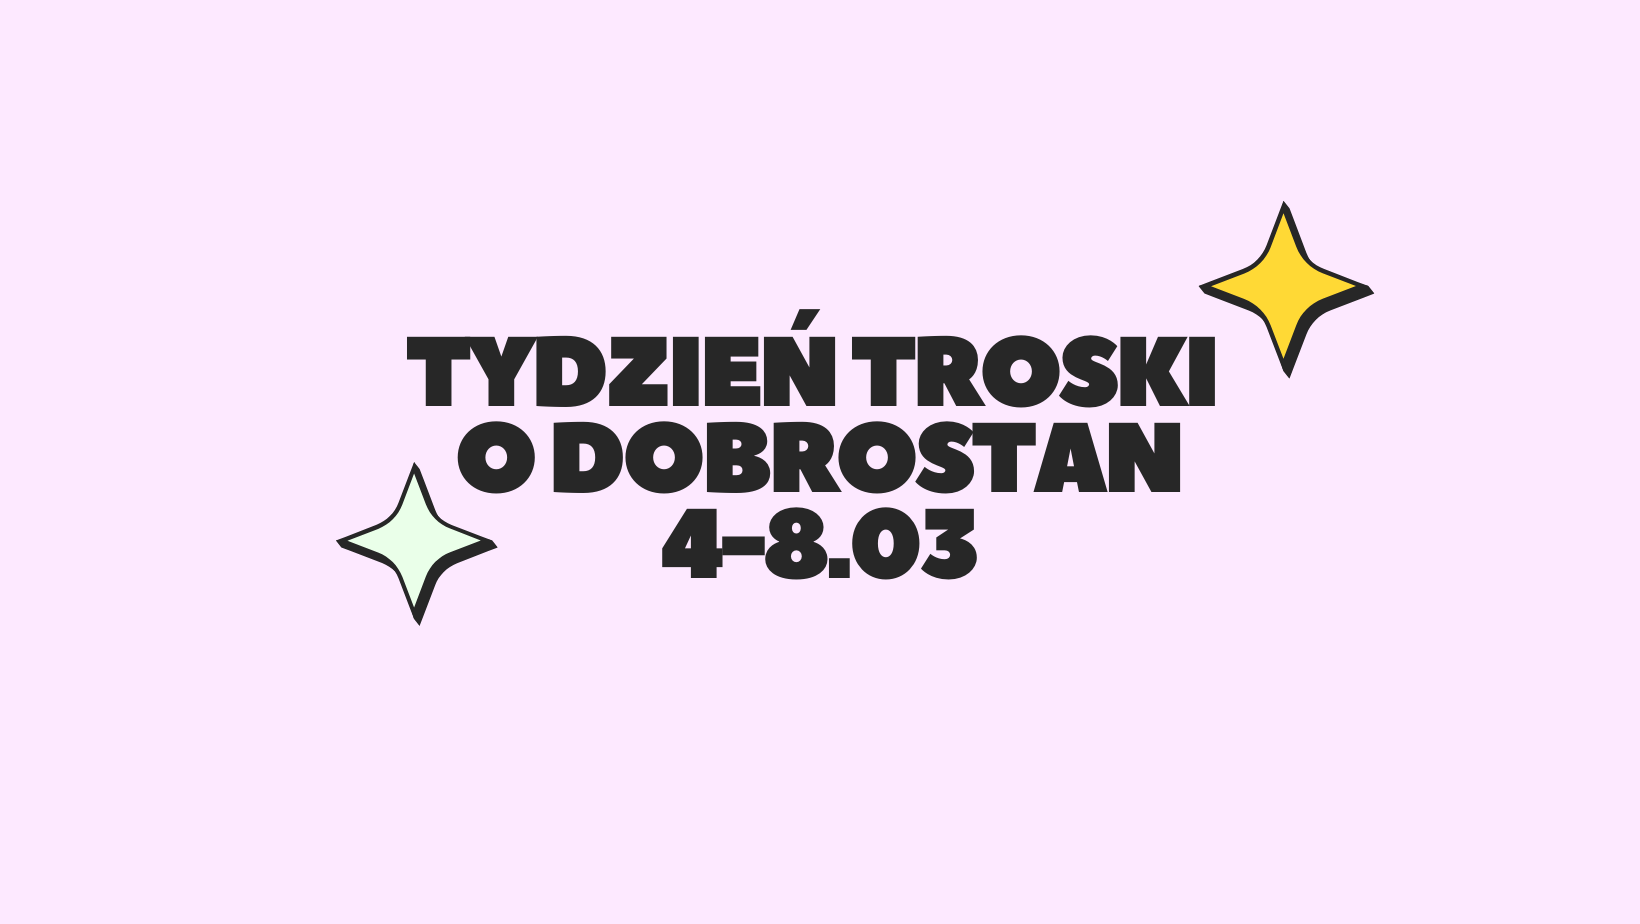 You are currently viewing Tydzień troski o dobrostan